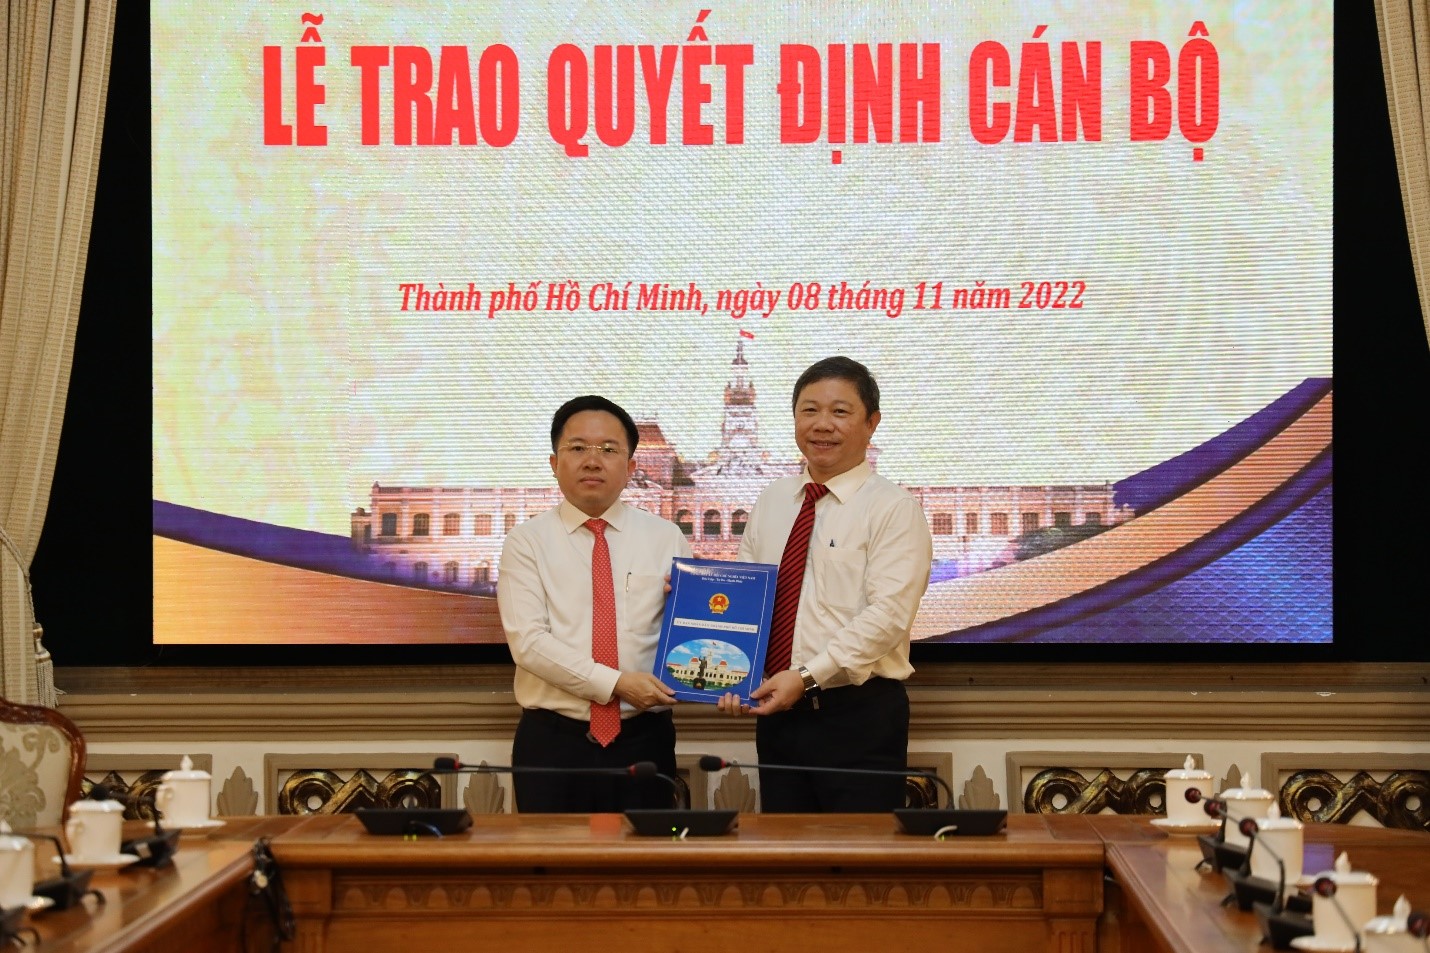 Đồng chí Dương Anh Đức - Phó Chủ tịch UBND Thành phố trao quyết định cho đồng chí Từ Lương.